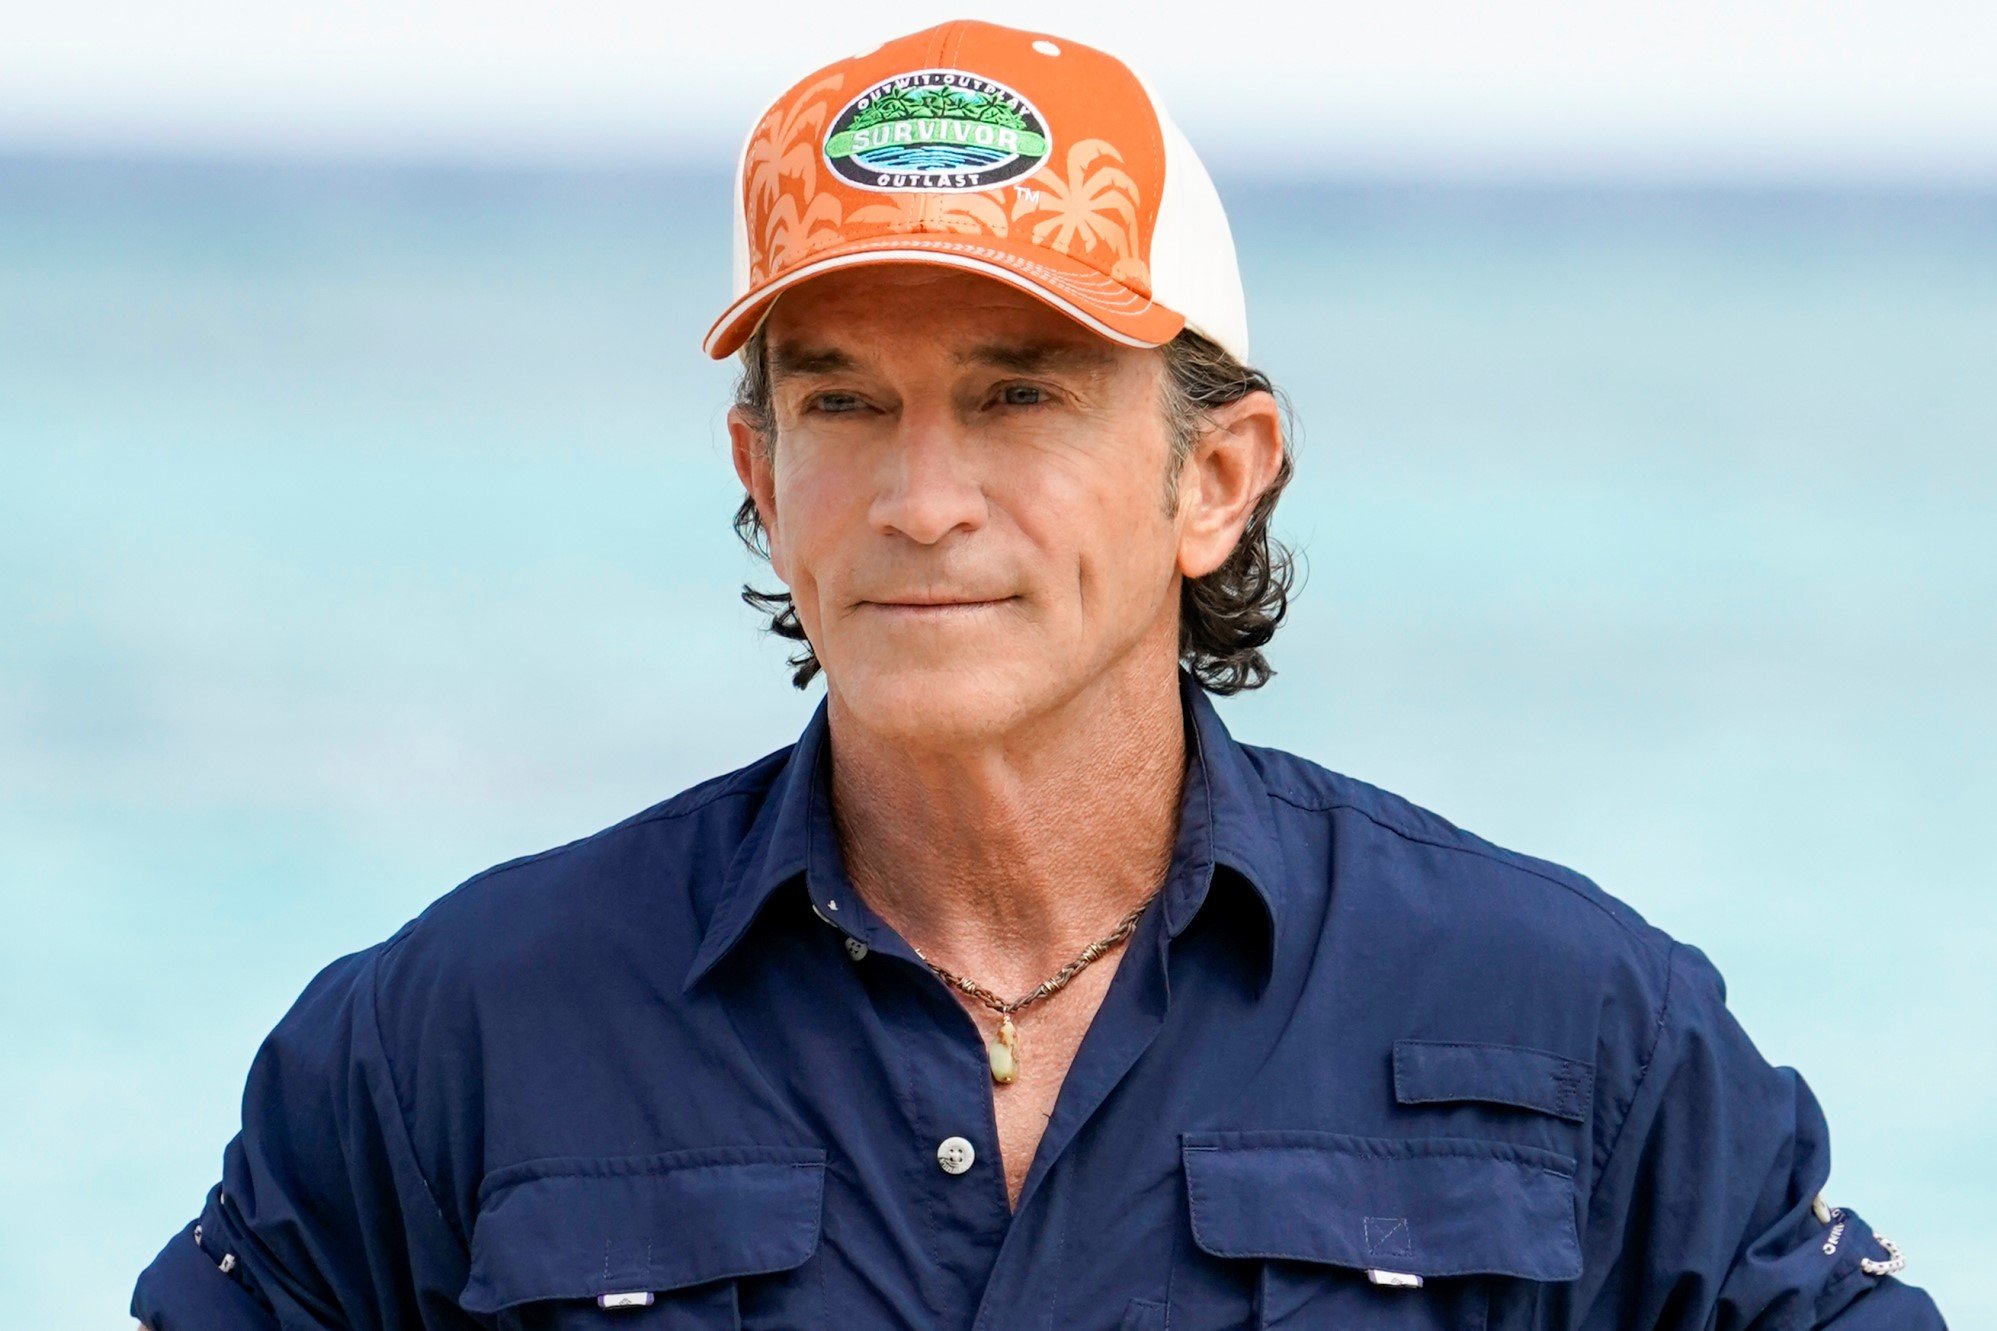 'Survivor' Season 42 host Jeff Probst wears a dark blue button-up shirt and orange 'Survivor' baseball hat.